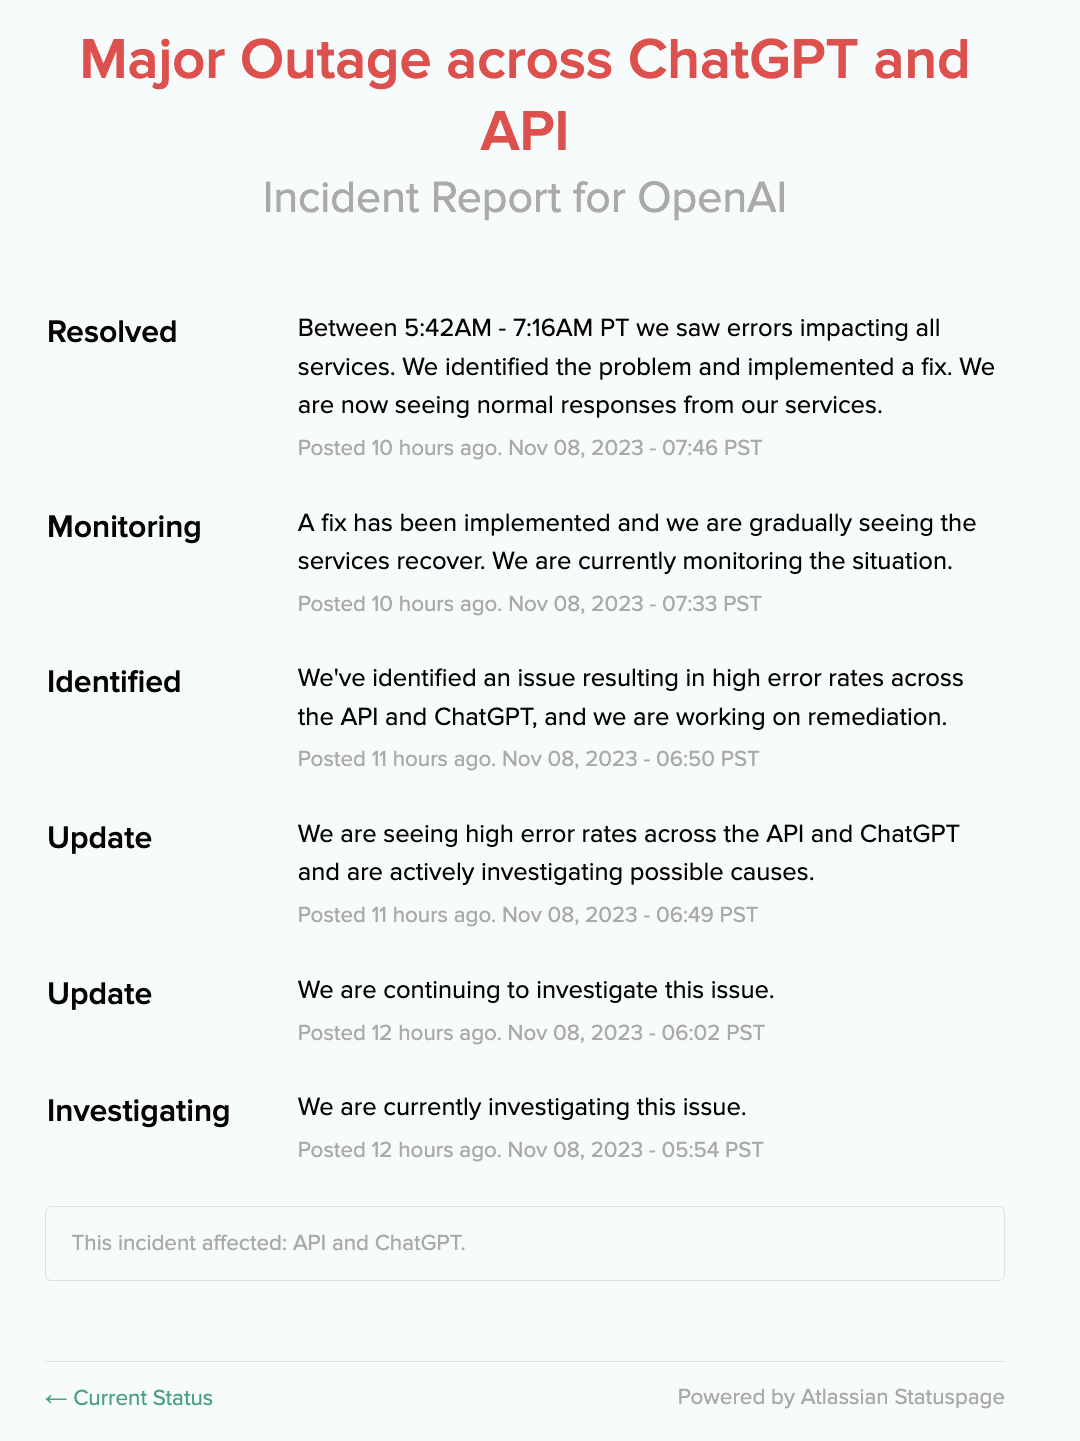 OpenAI résout les pannes périodiques de ChatGPT et d'API causées par les attaques DDoS